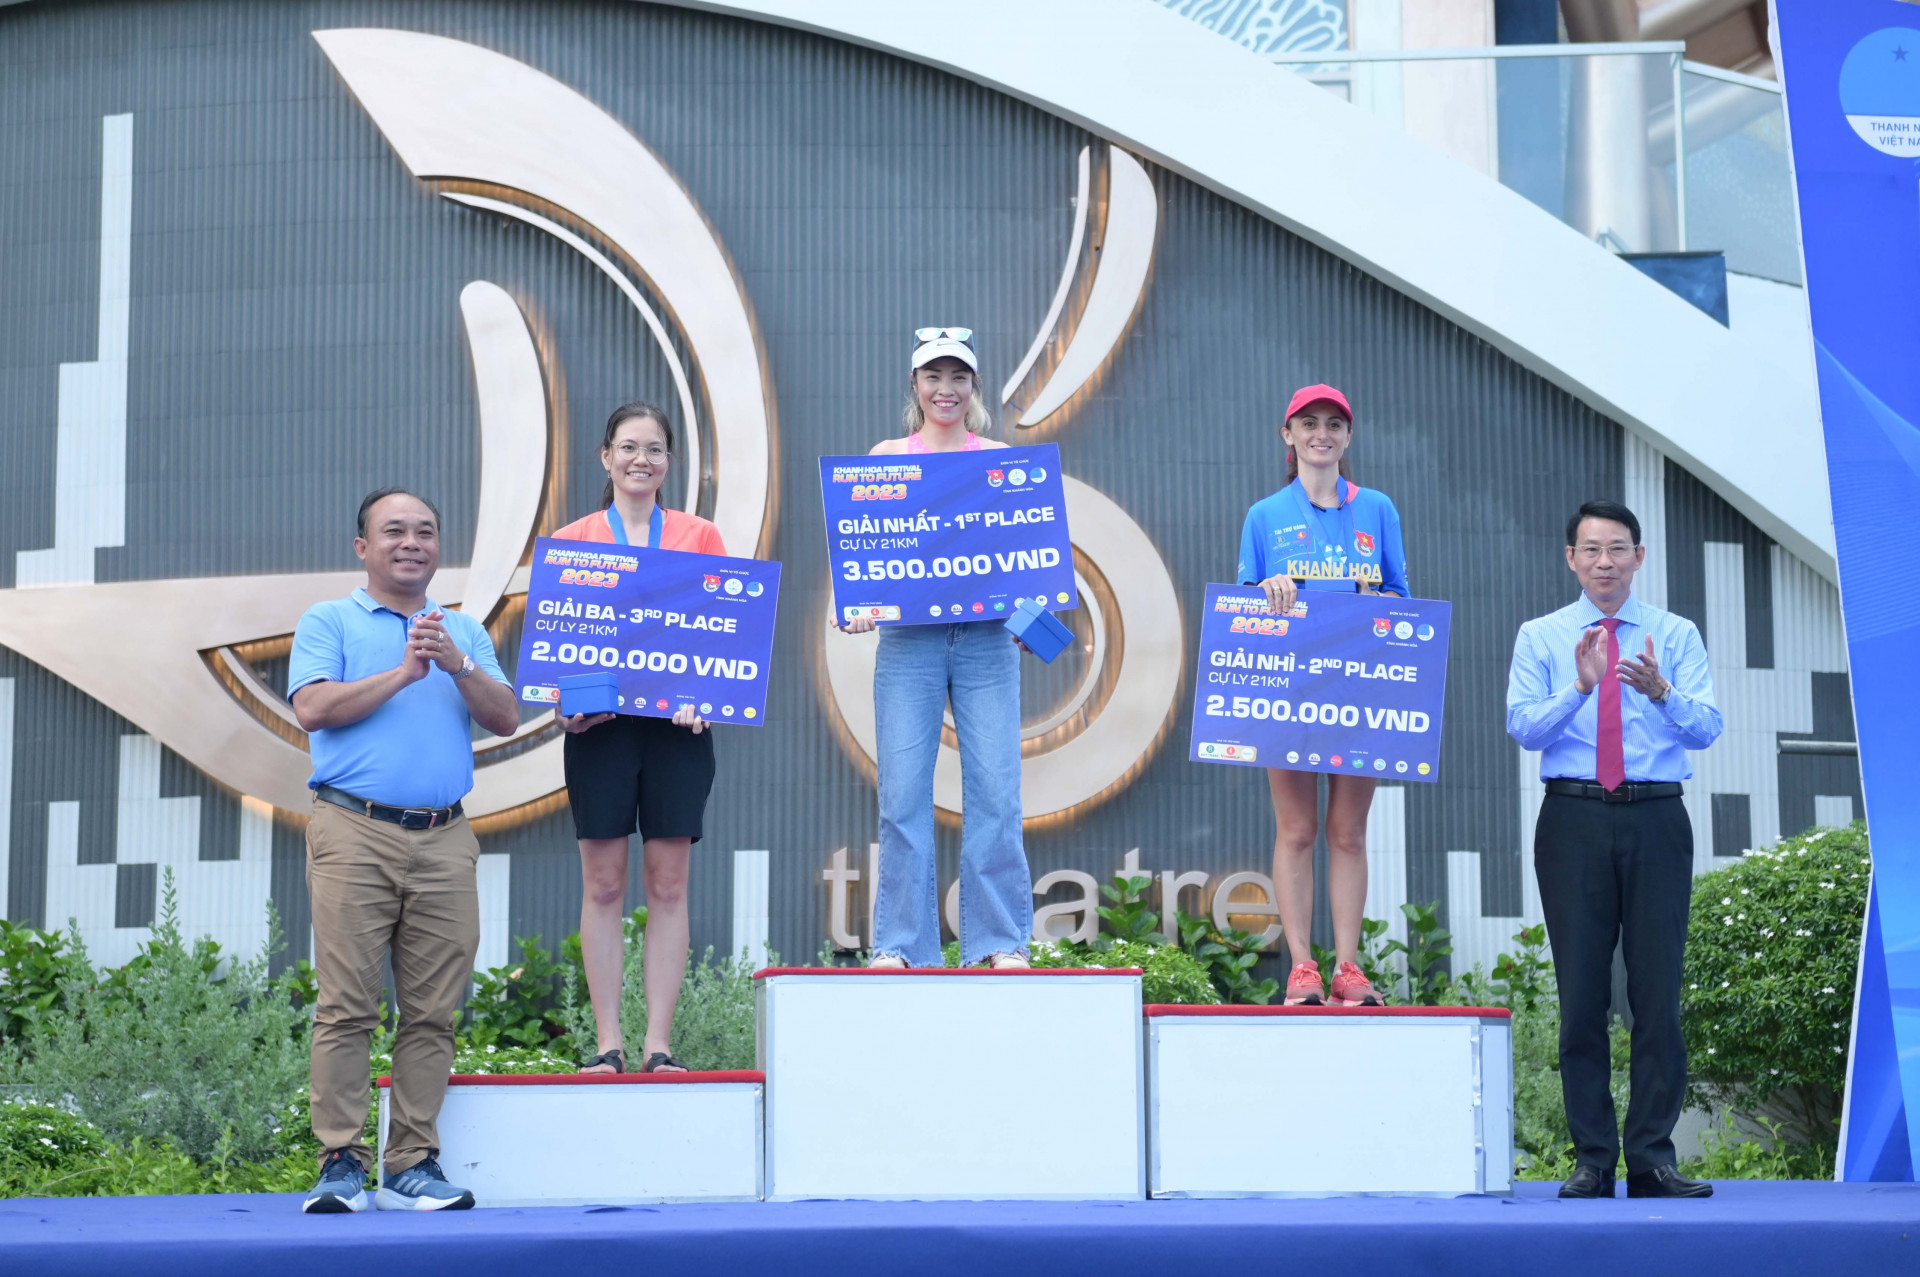 Lãnh đạo tỉnh trao giải nội dung 21km cho các vận động viên nữ.